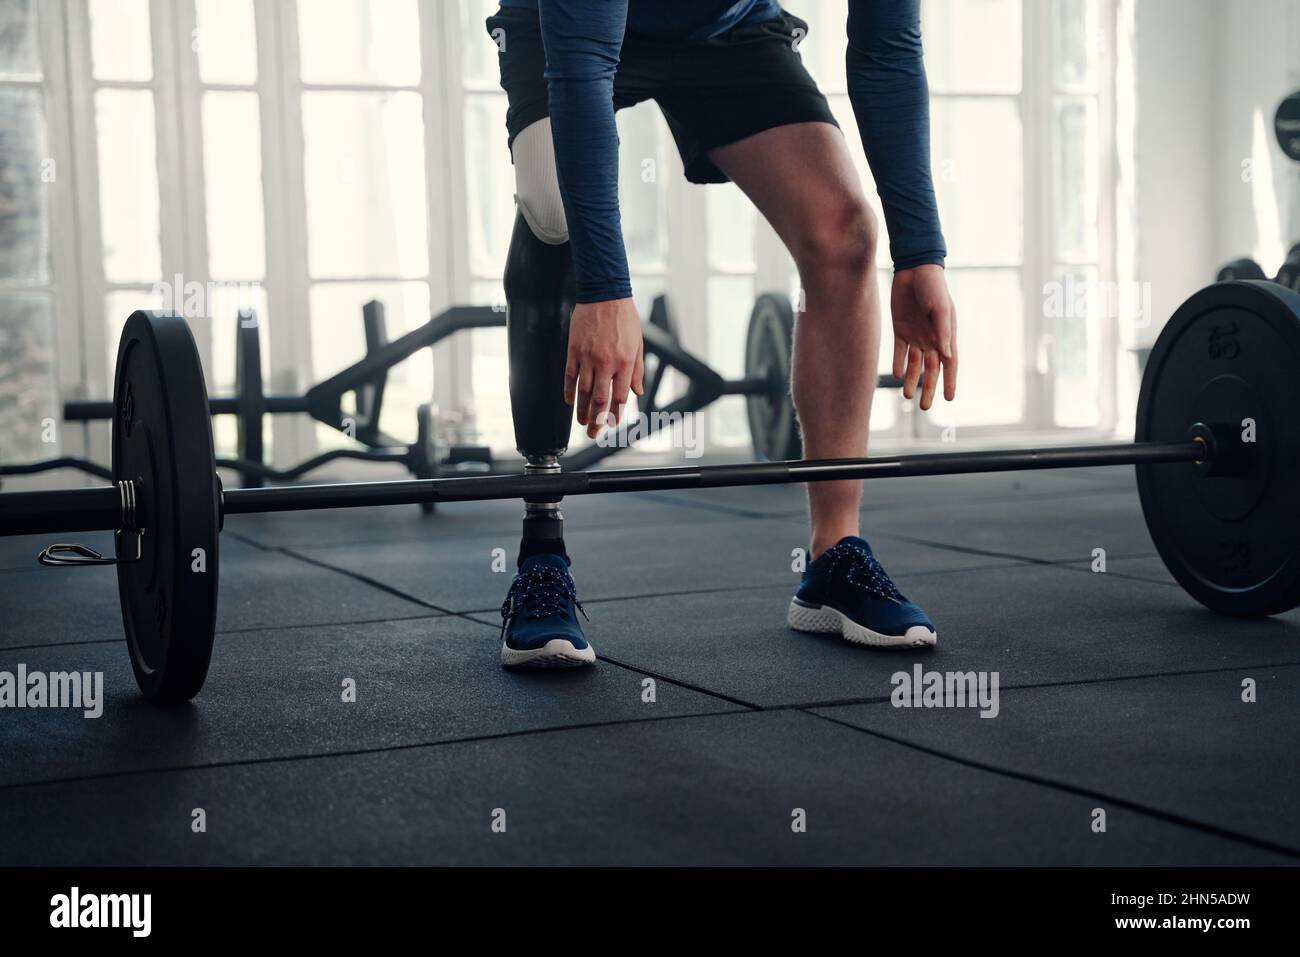 Gros plan d'un athlète paralympique masculin avec une jambe prothétique sur le point de soulever une barbell Banque D'Images